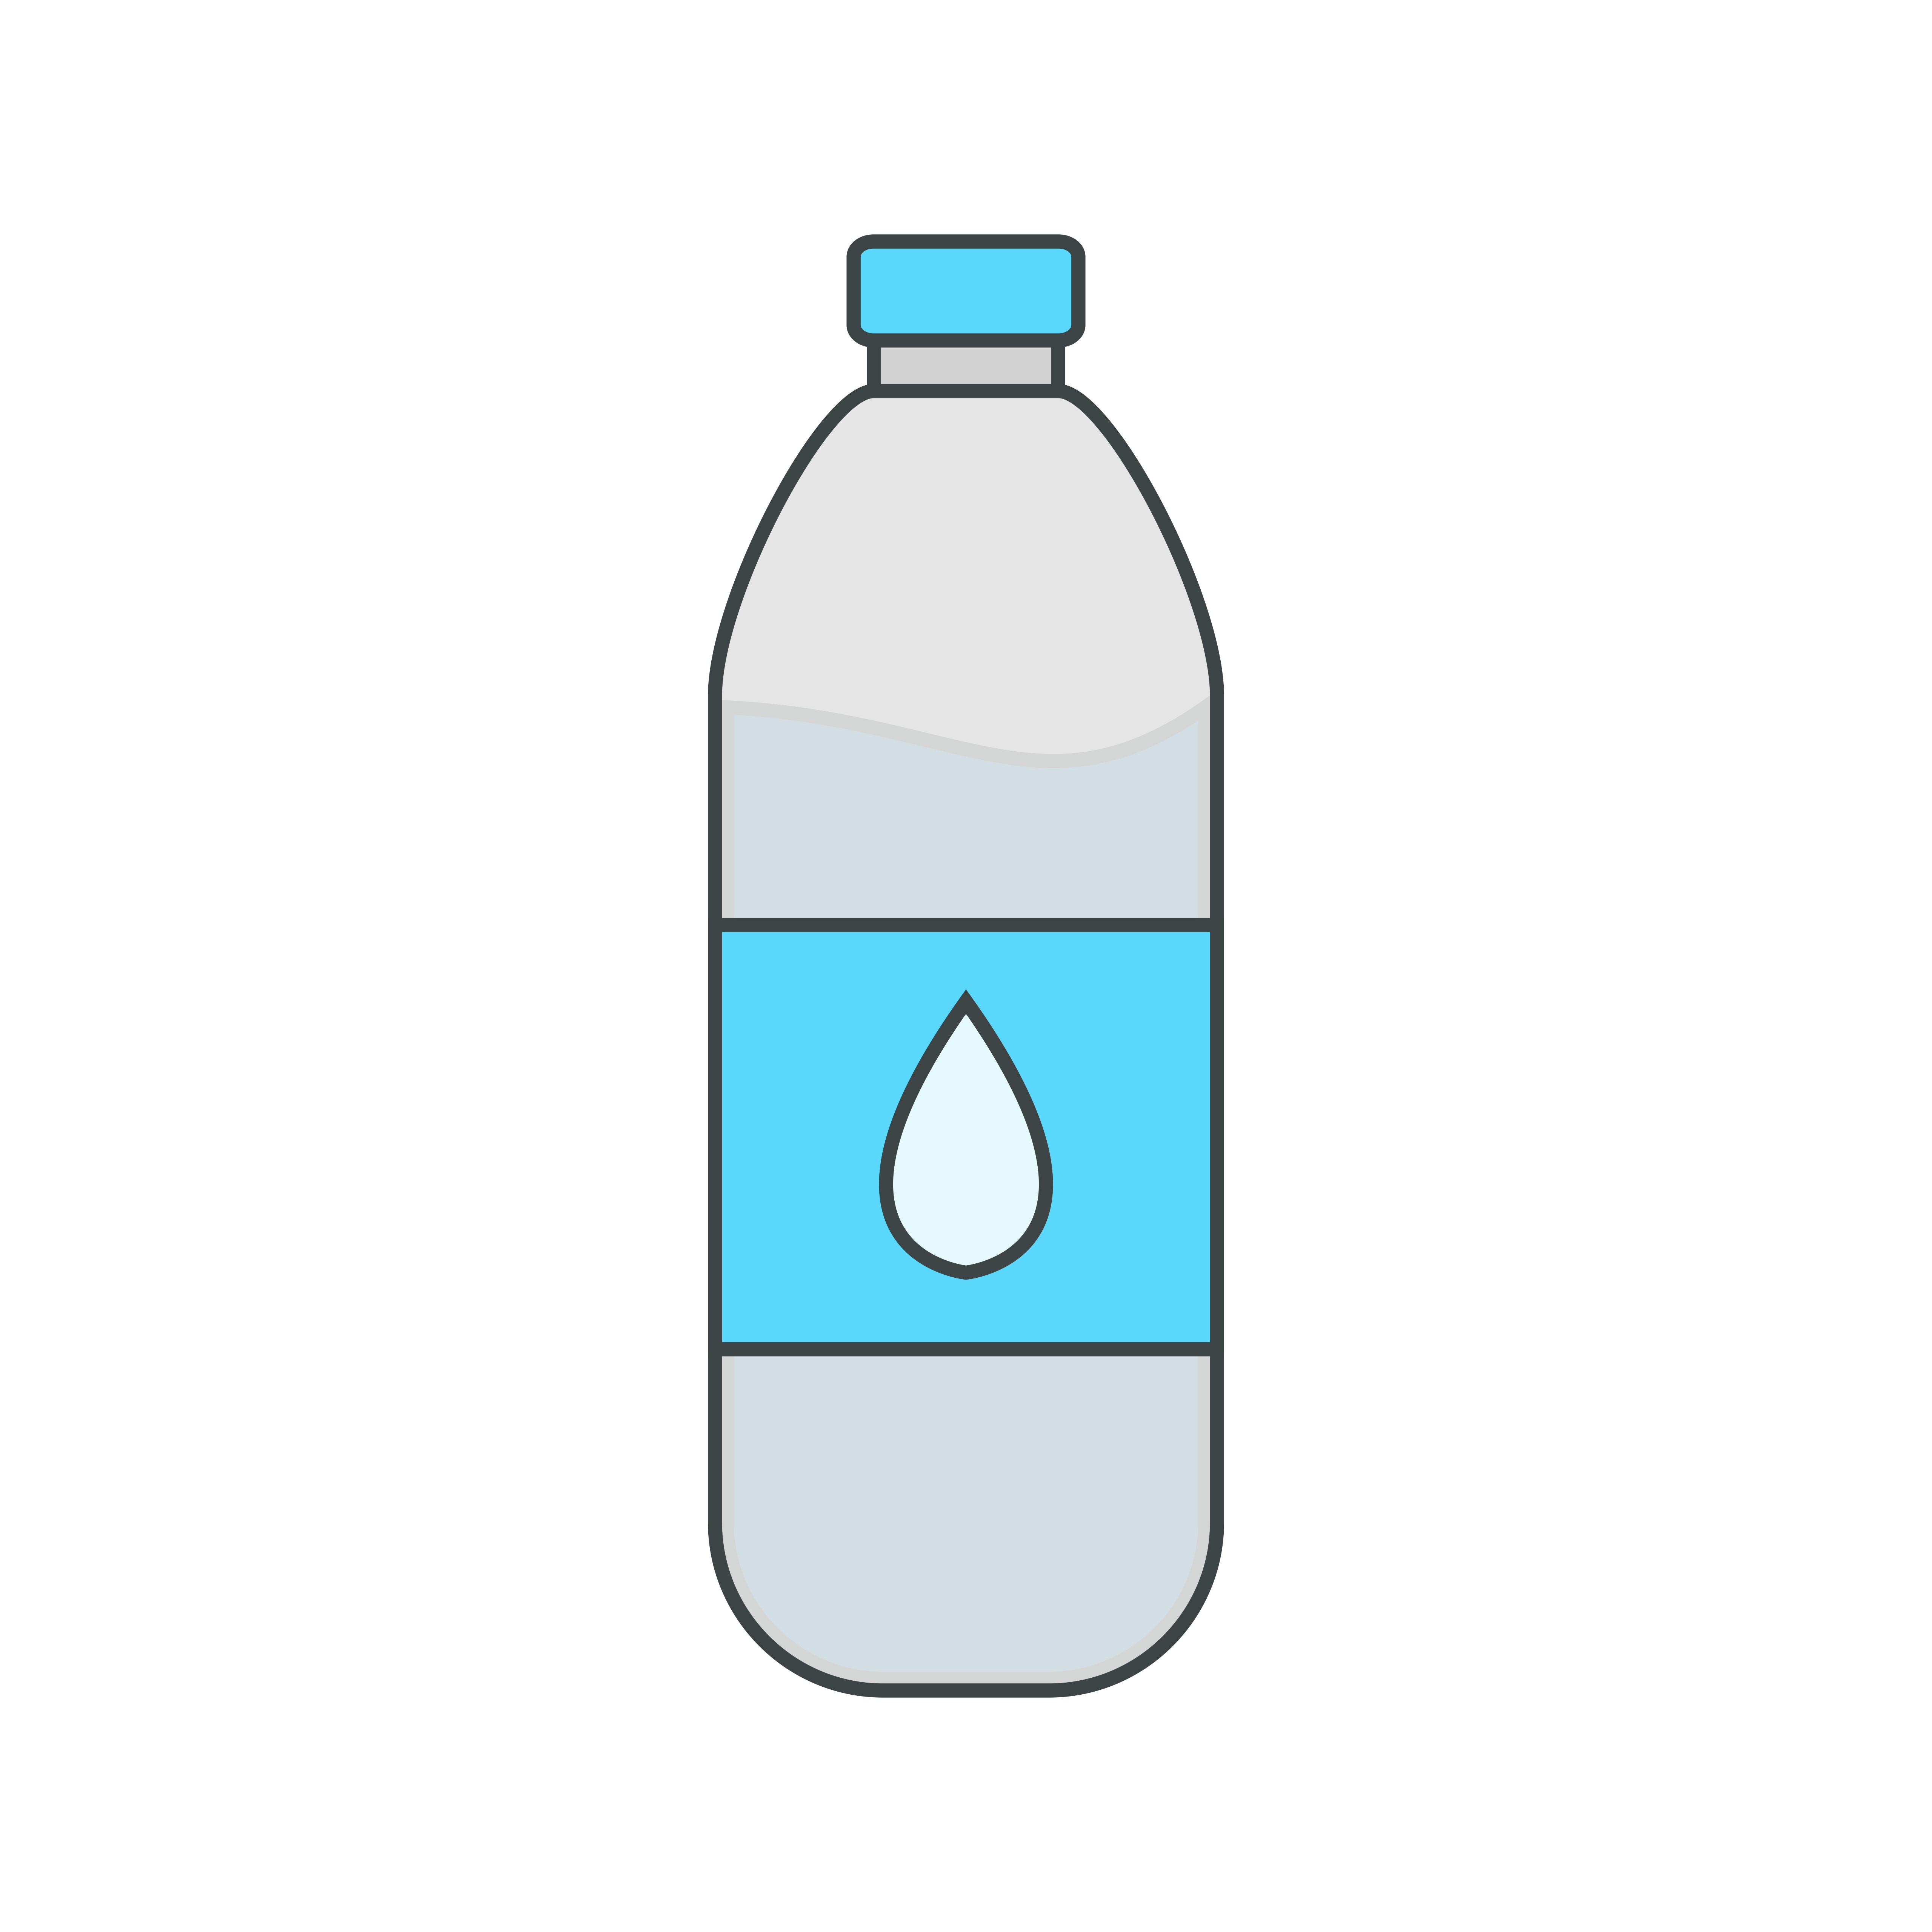 Botella De Agua Vectores, Iconos, Gráficos y Fondos para Descargar Gratis